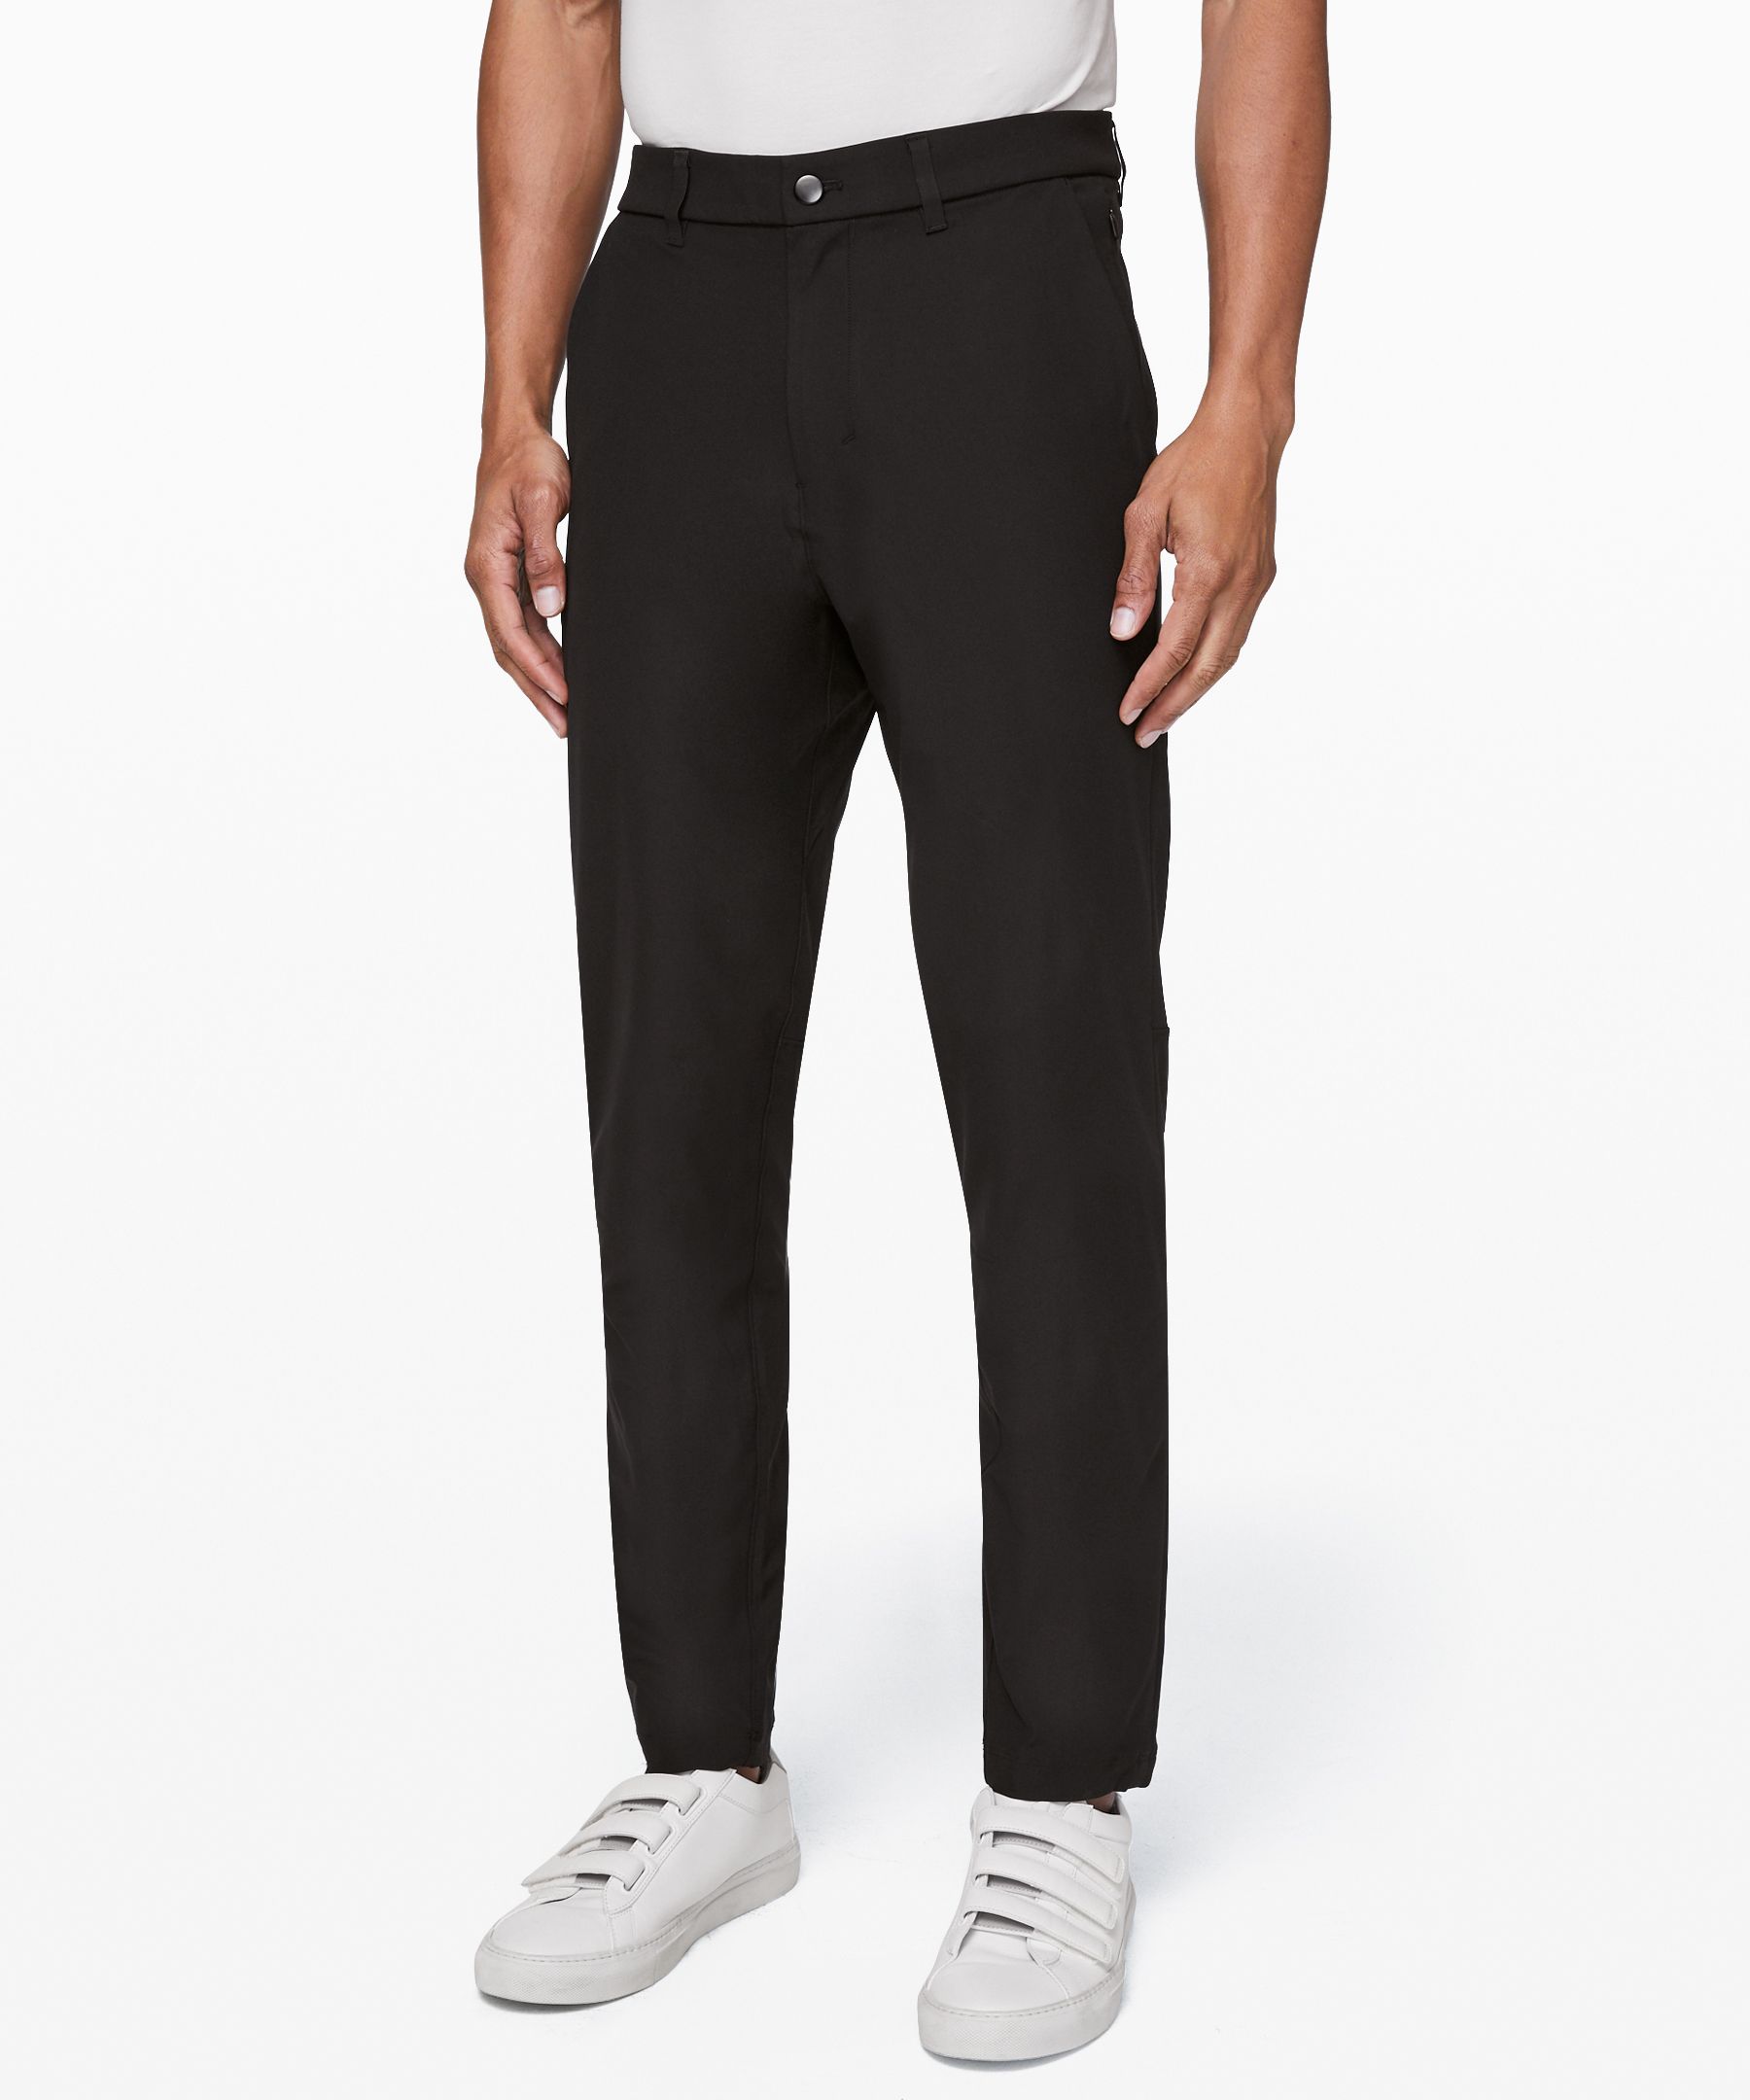 Lululemon Commission Slim-fit Pants 28" Warpstreme In Black